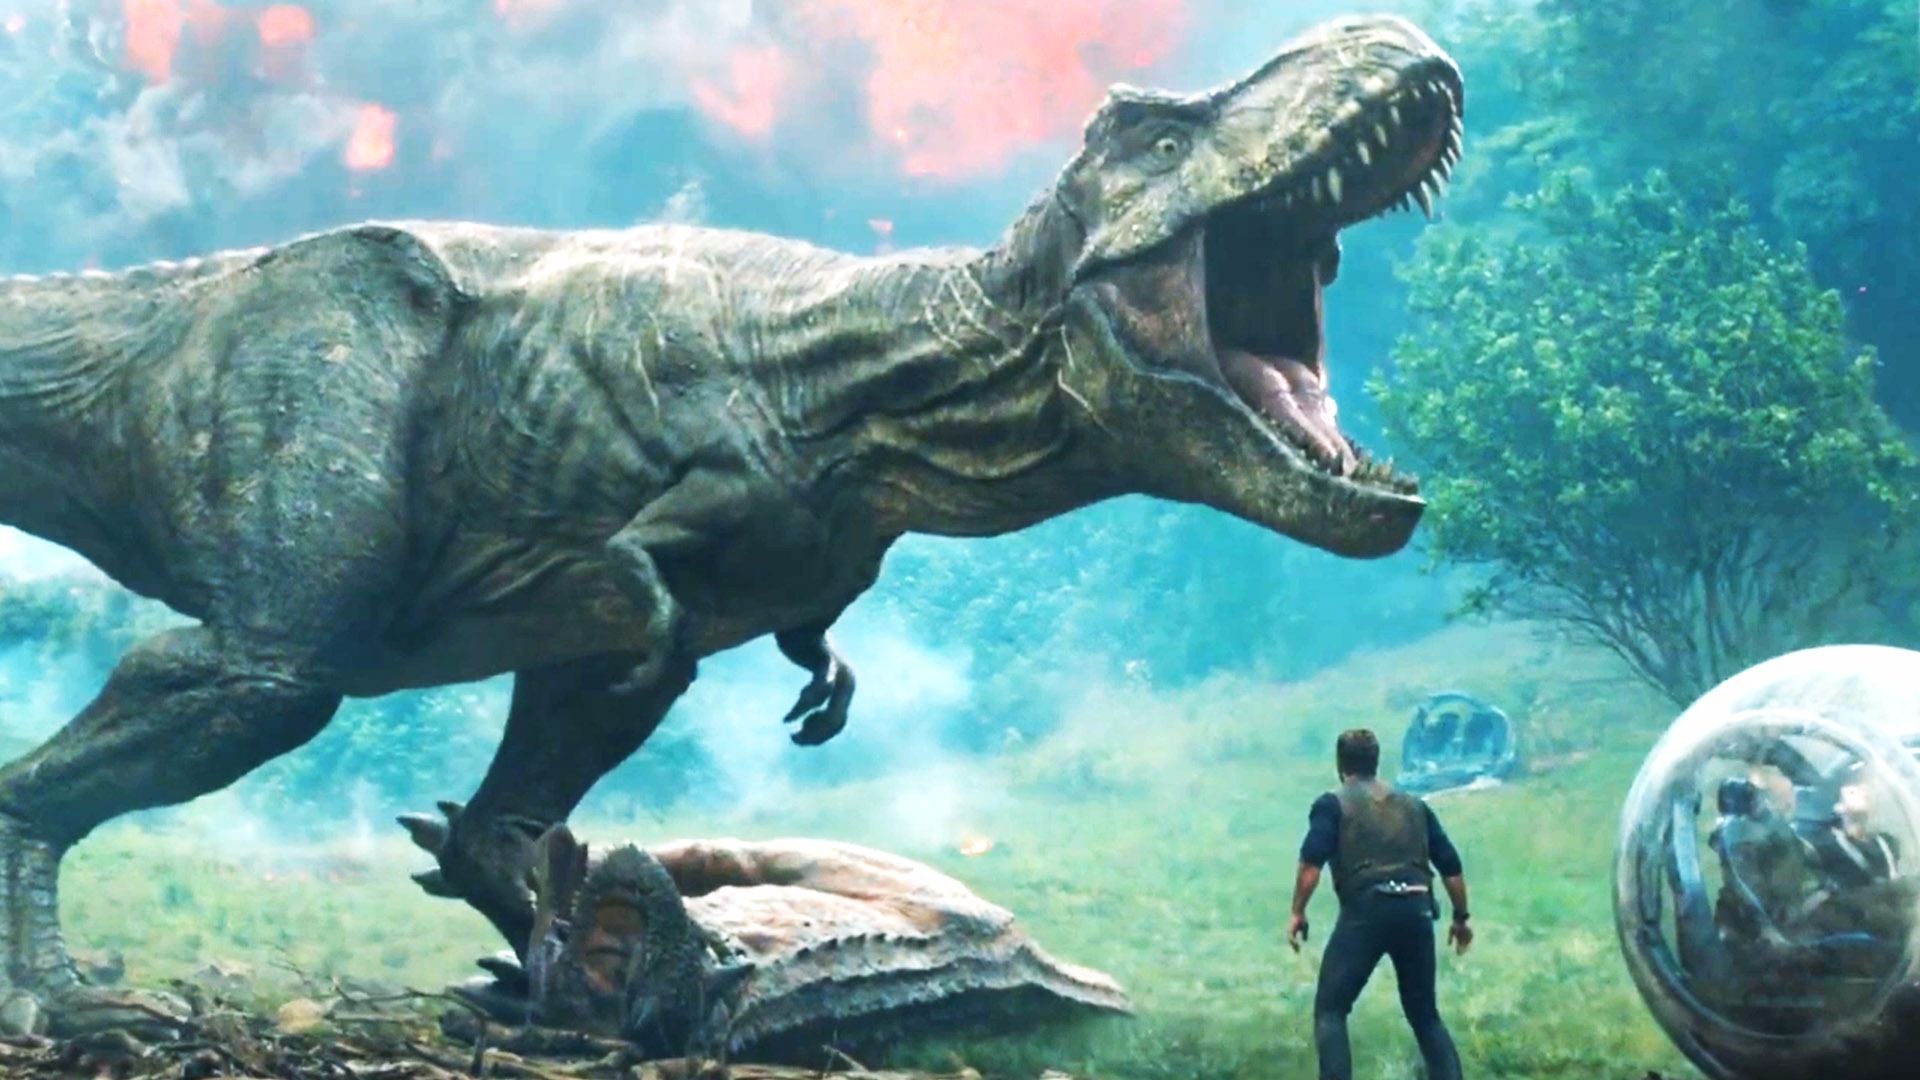 Jurassic World: Fallen Kingdom for ios instal free